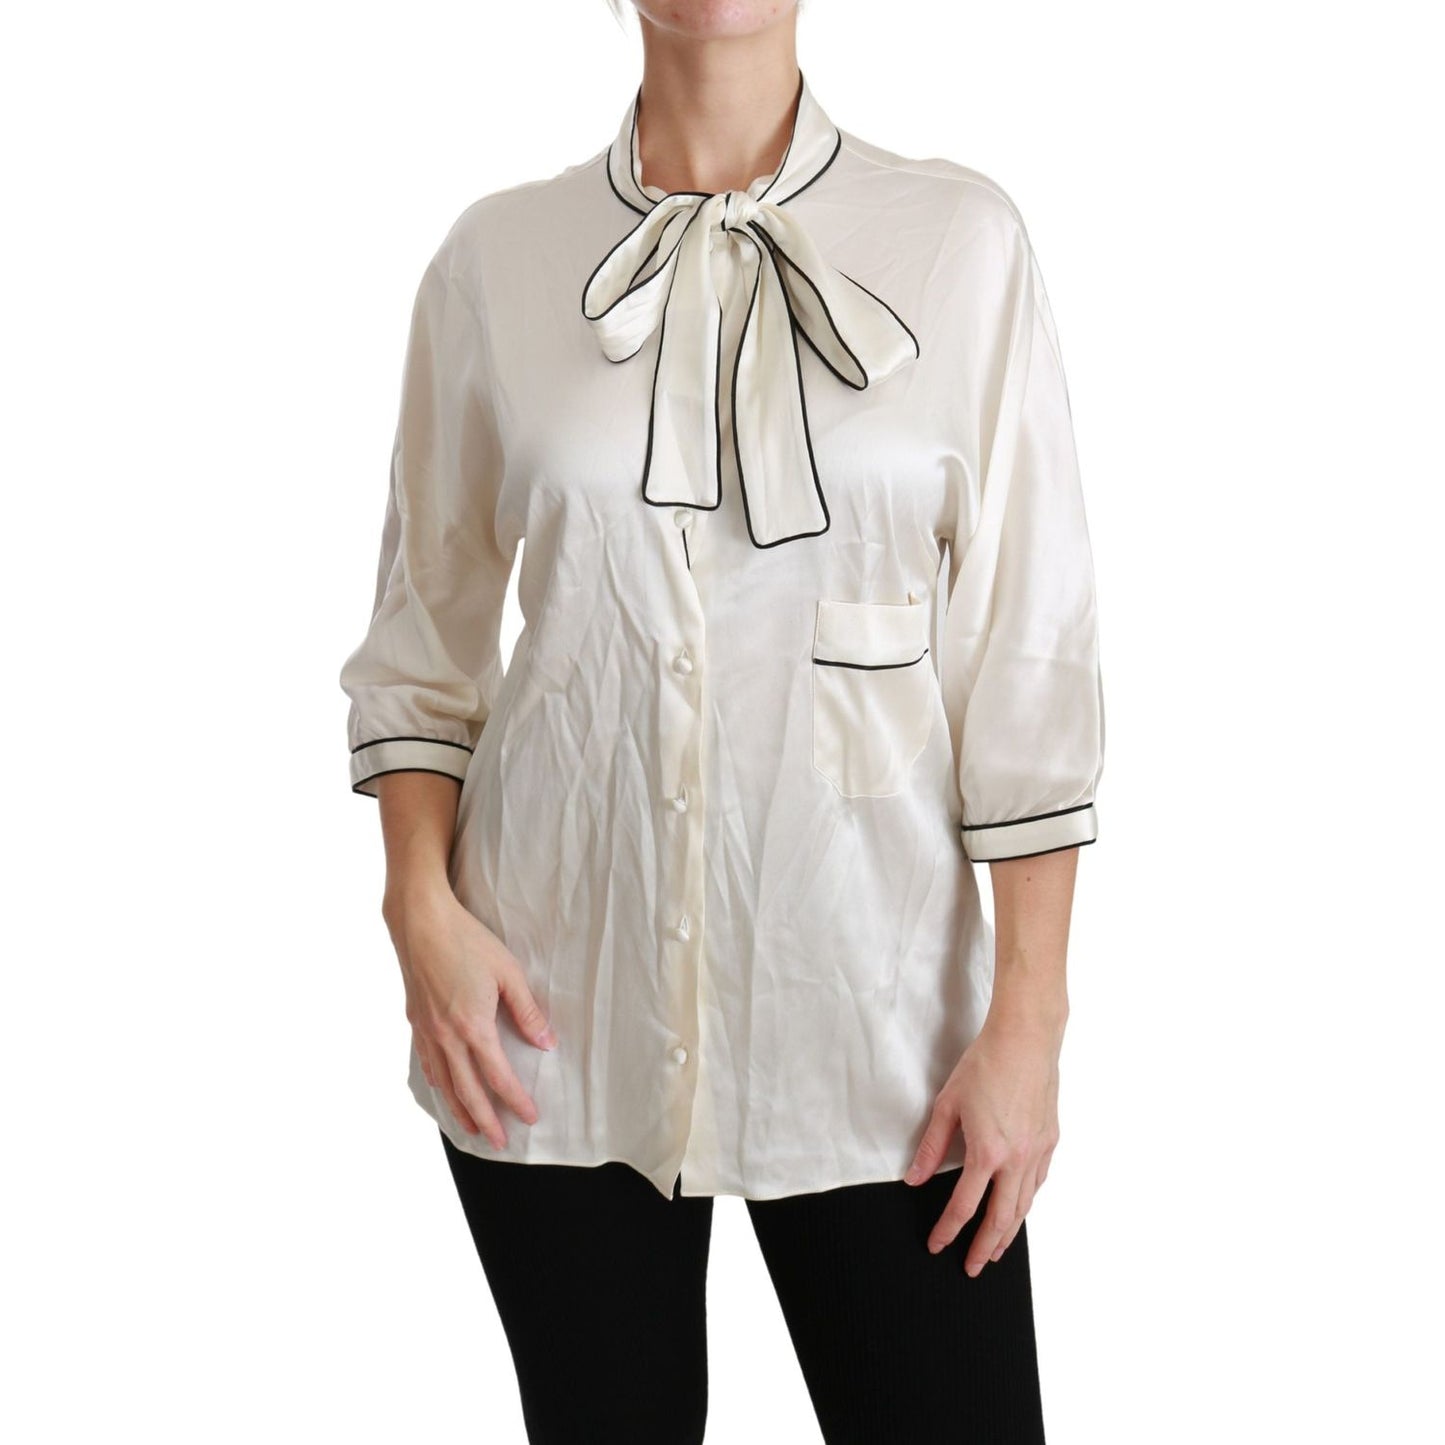 Dolce & Gabbana | Beige 3/4 Sleeve Shirt Blouse Silk Top | McRichard Designer Brands